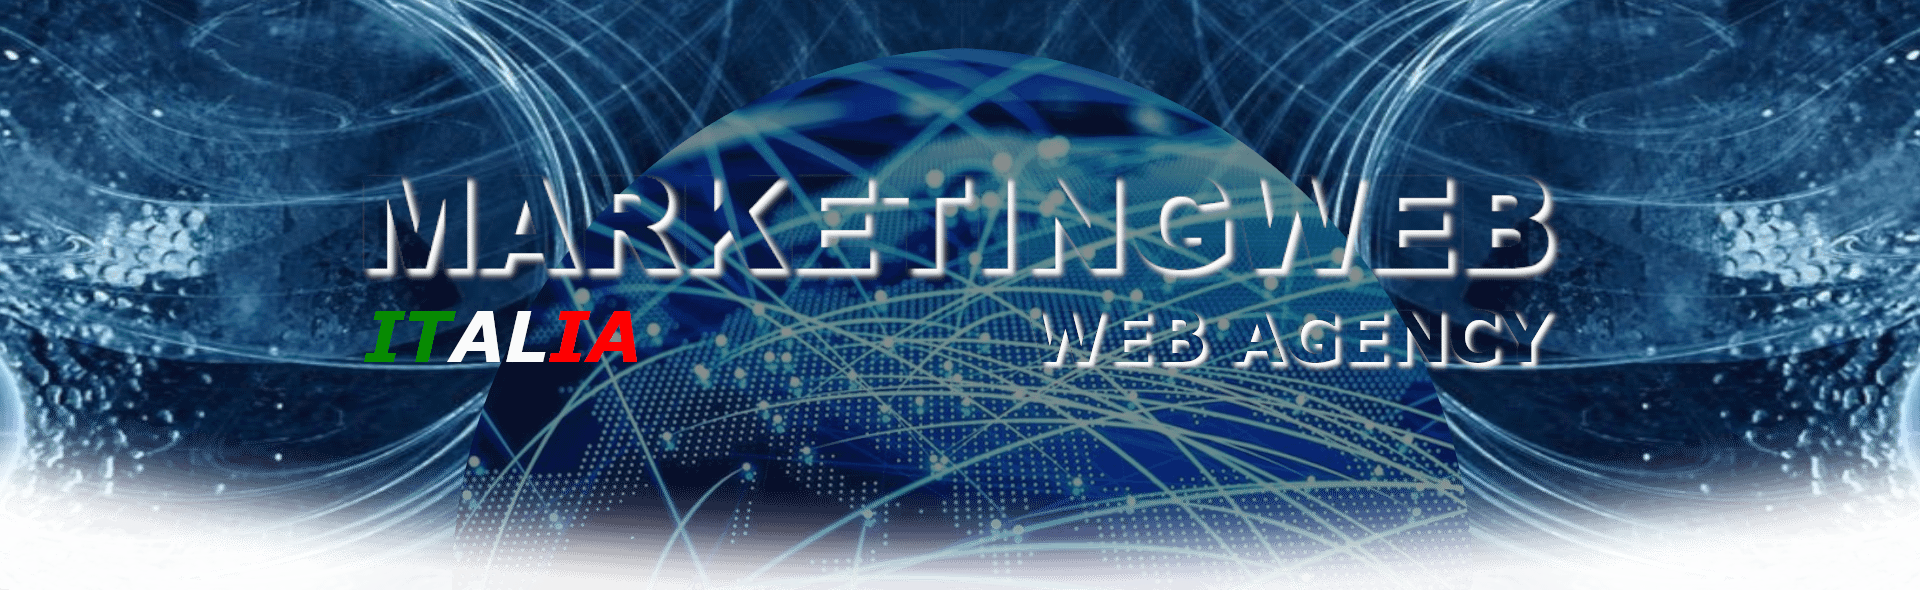 marketingwebitalia